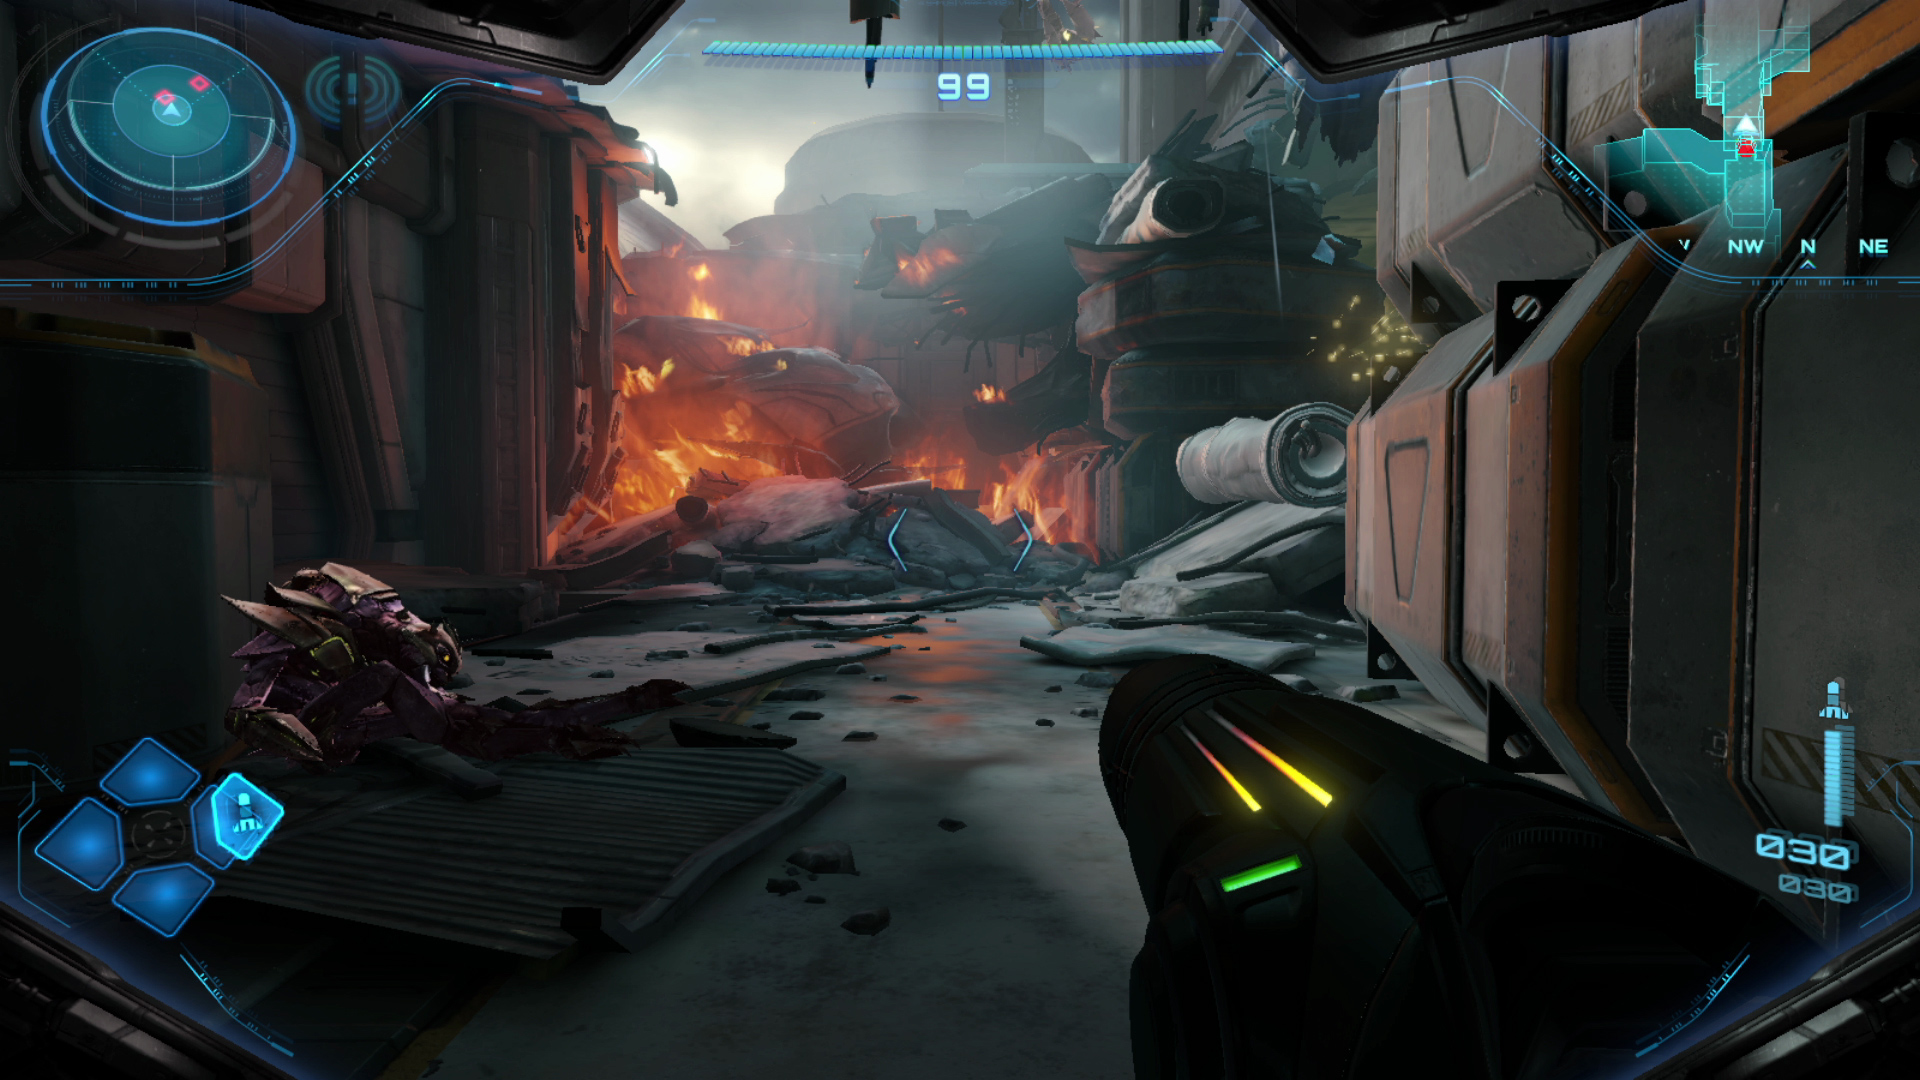 Metroid prime 4 beyond screenshot 5 5